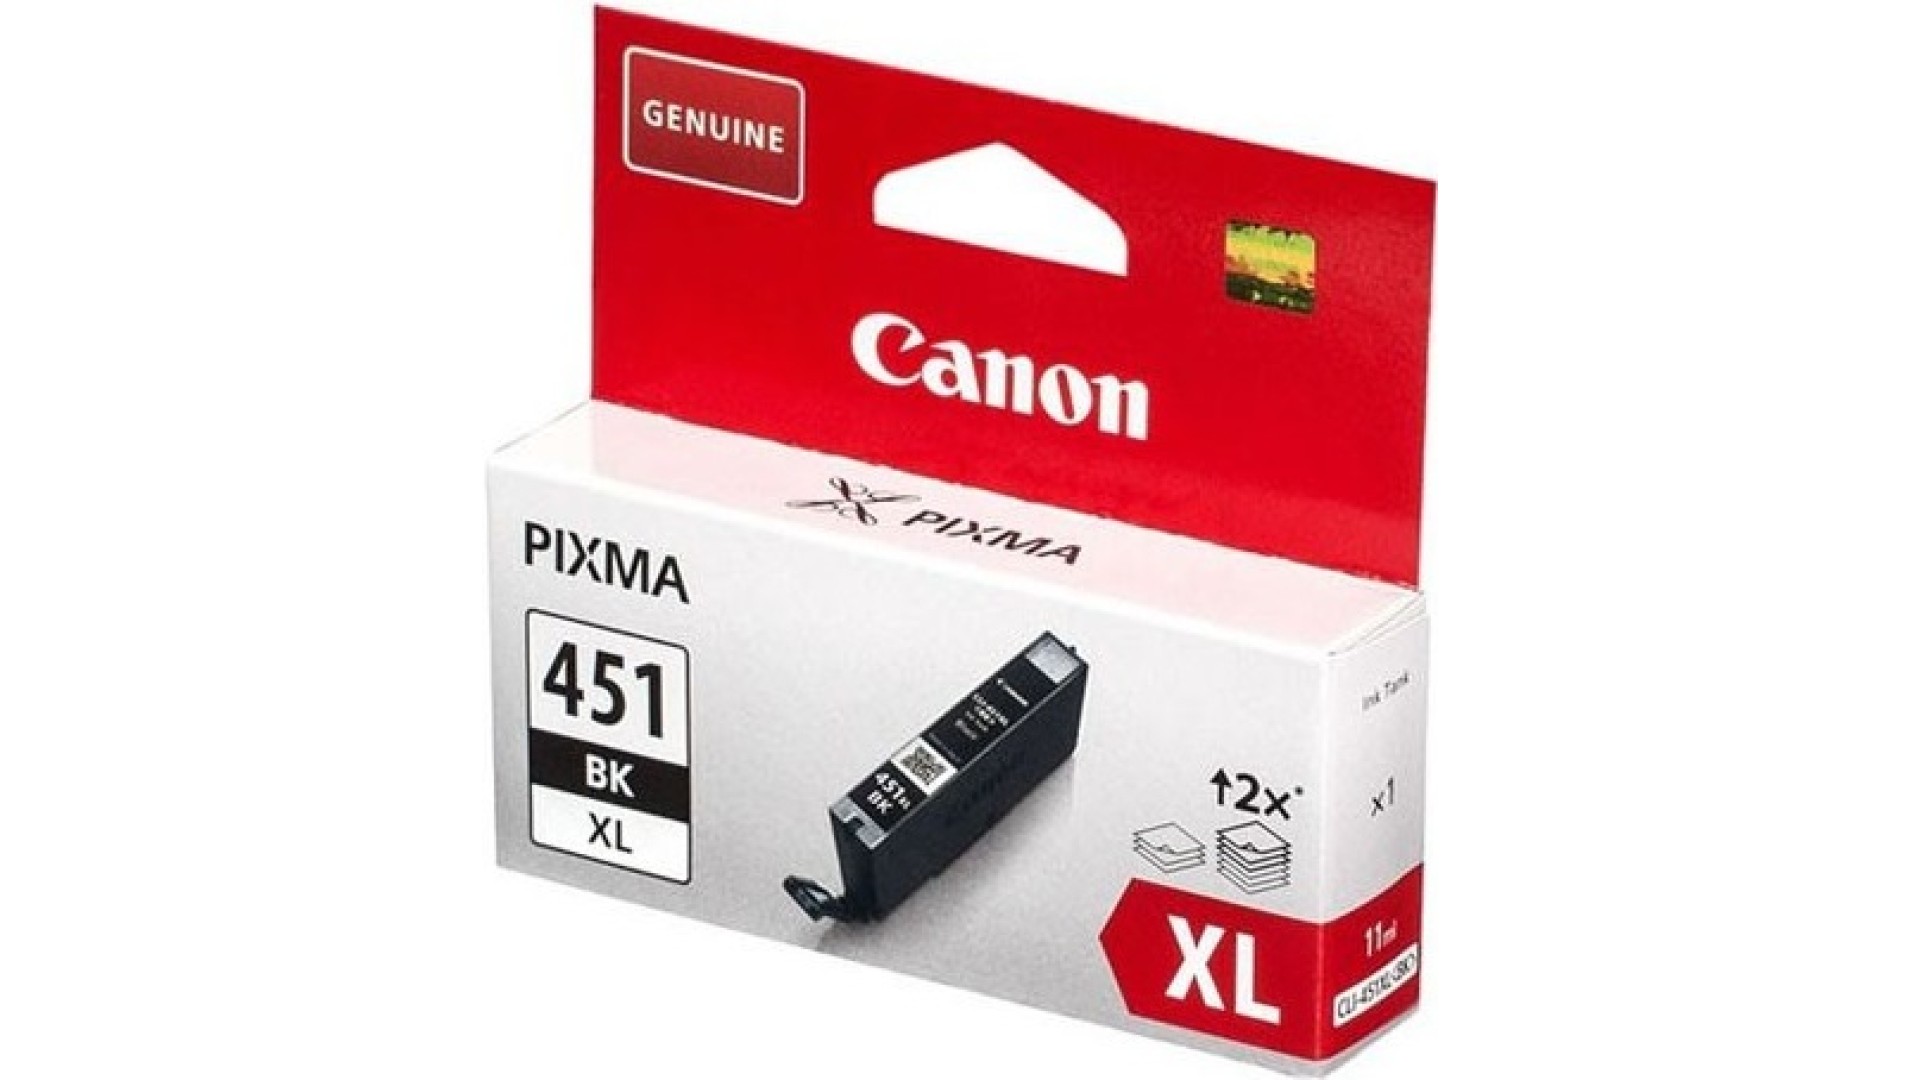 კარტრიჯი Canon  CLI-451XL BK Black for PIXMA IP7240, iP8740, iX6840, MG5440, MG5540, MG5640, MG6340, MG6440, MG6640, MG7140, MG7540, MX924 ( 450 Pages)